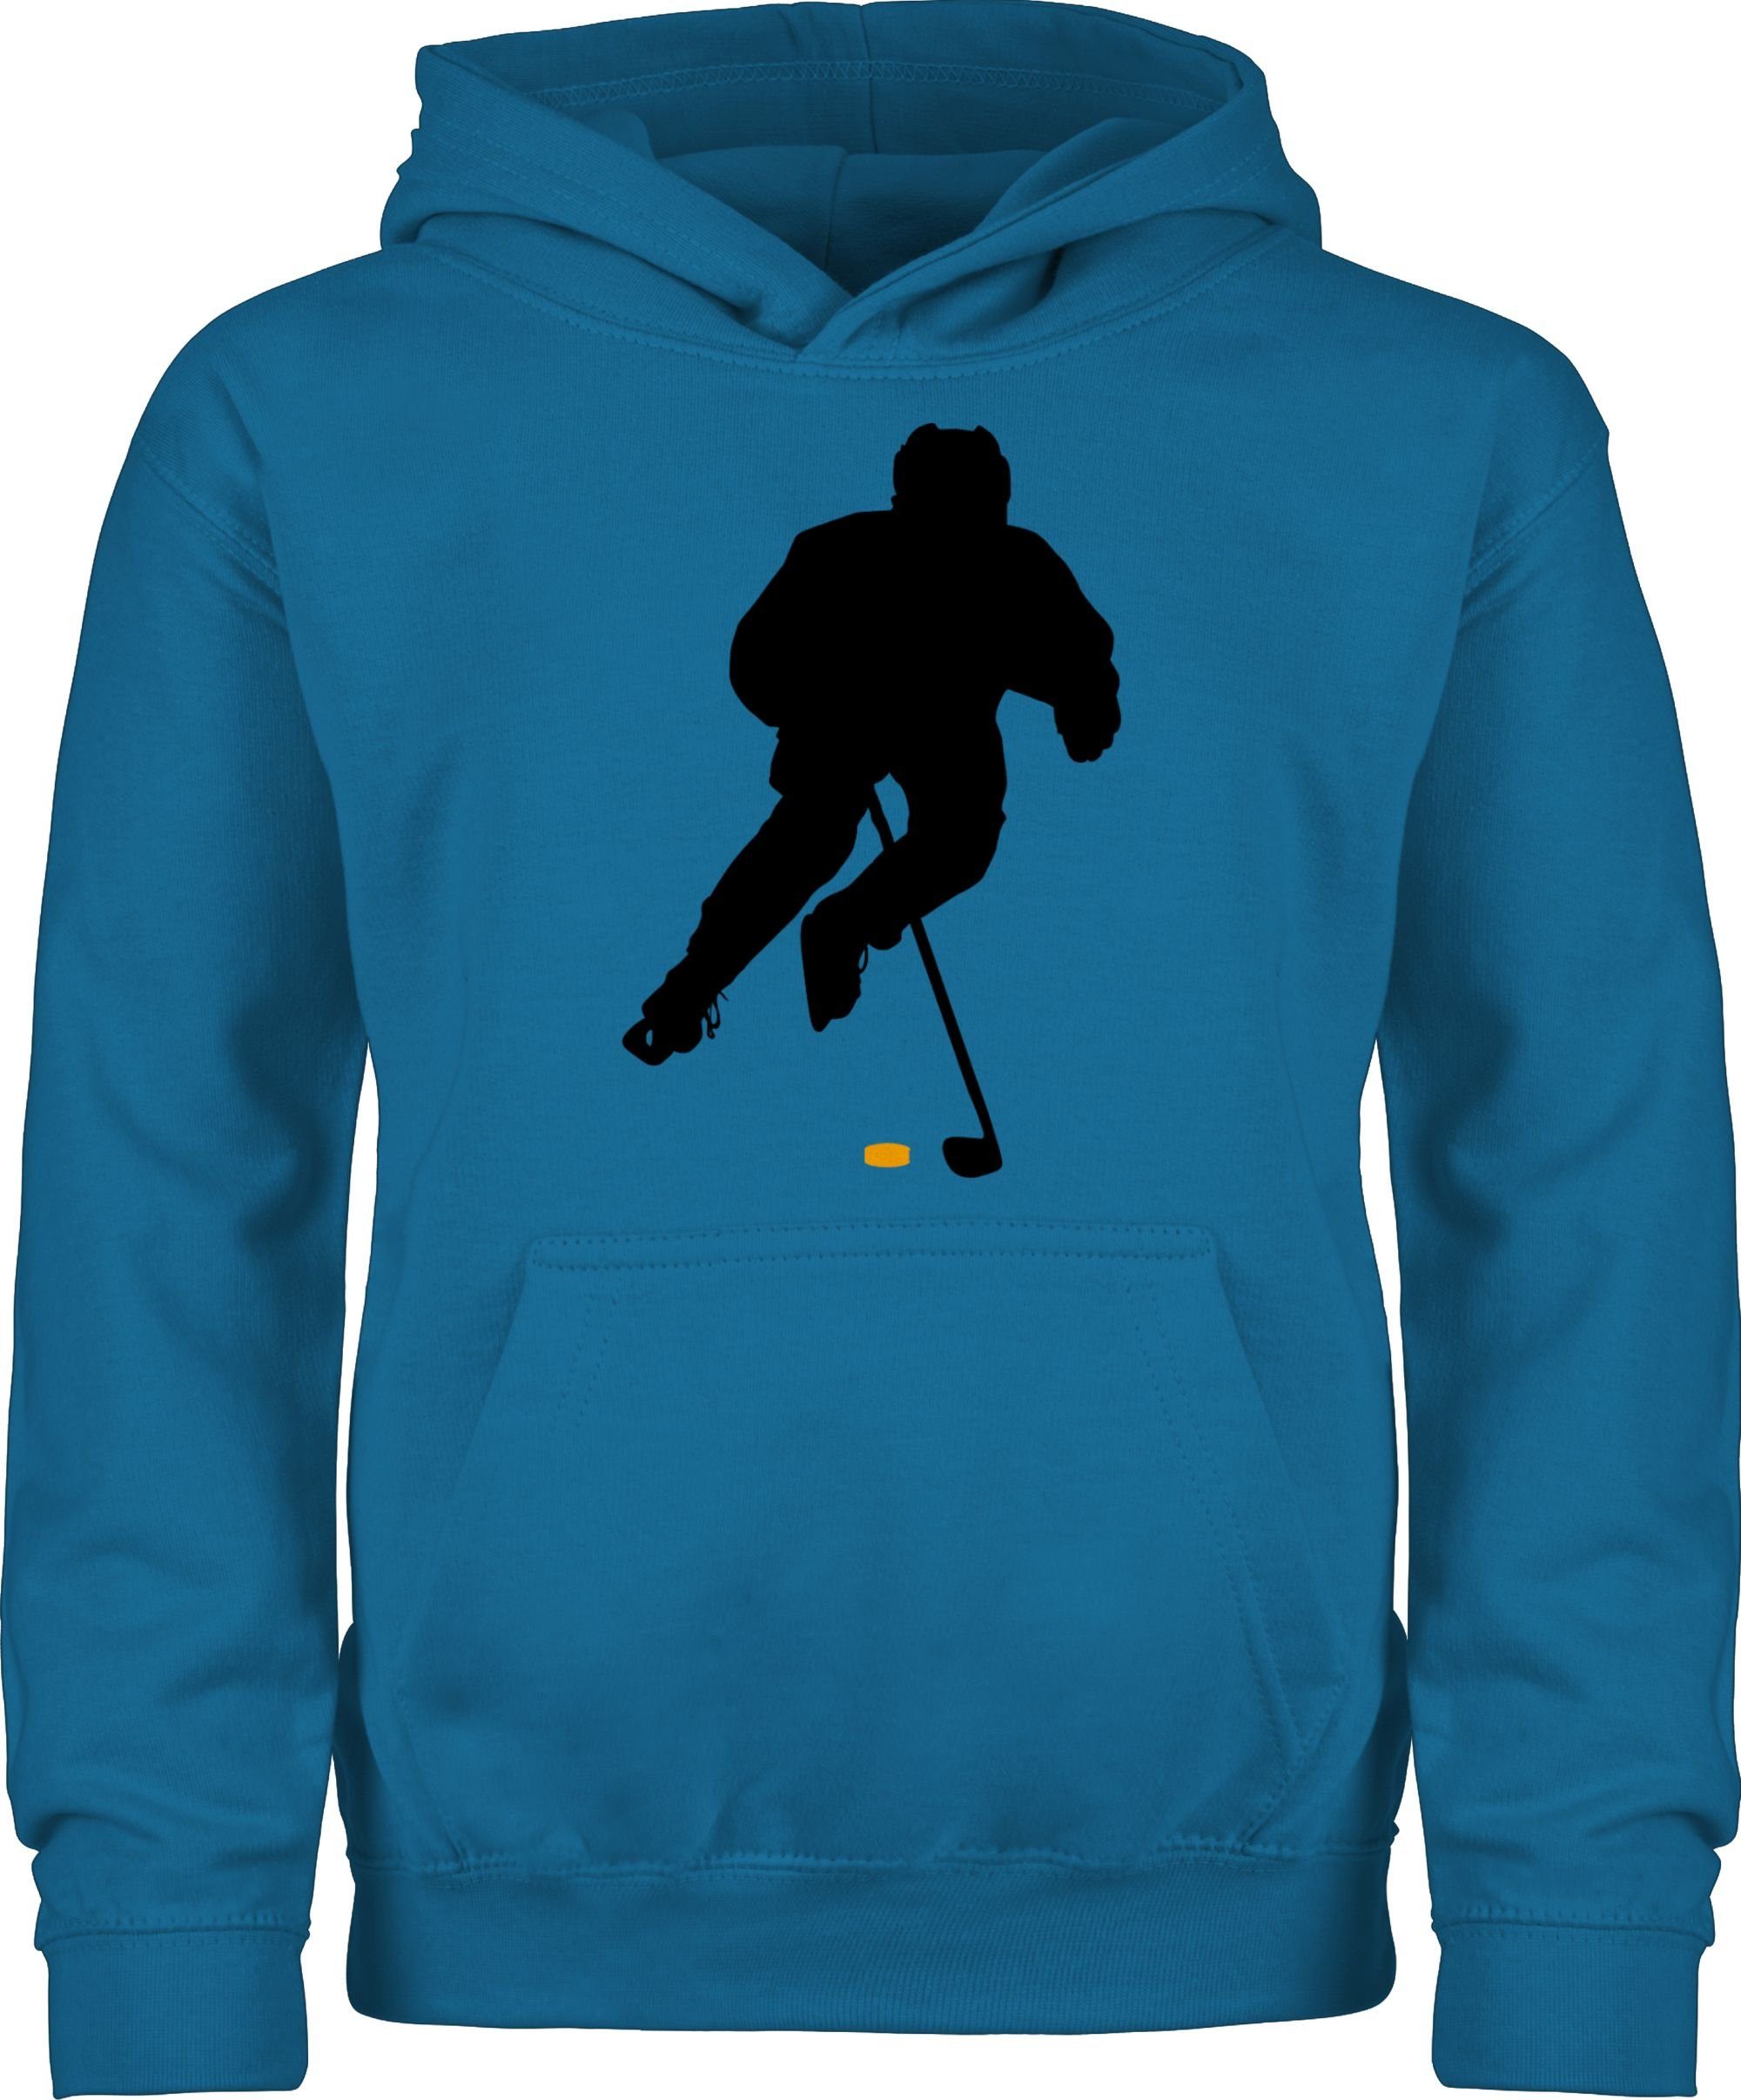 Shirtracer Hoodie Eishockey Spieler Kinder Sport Kleidung 1 Himmelblau